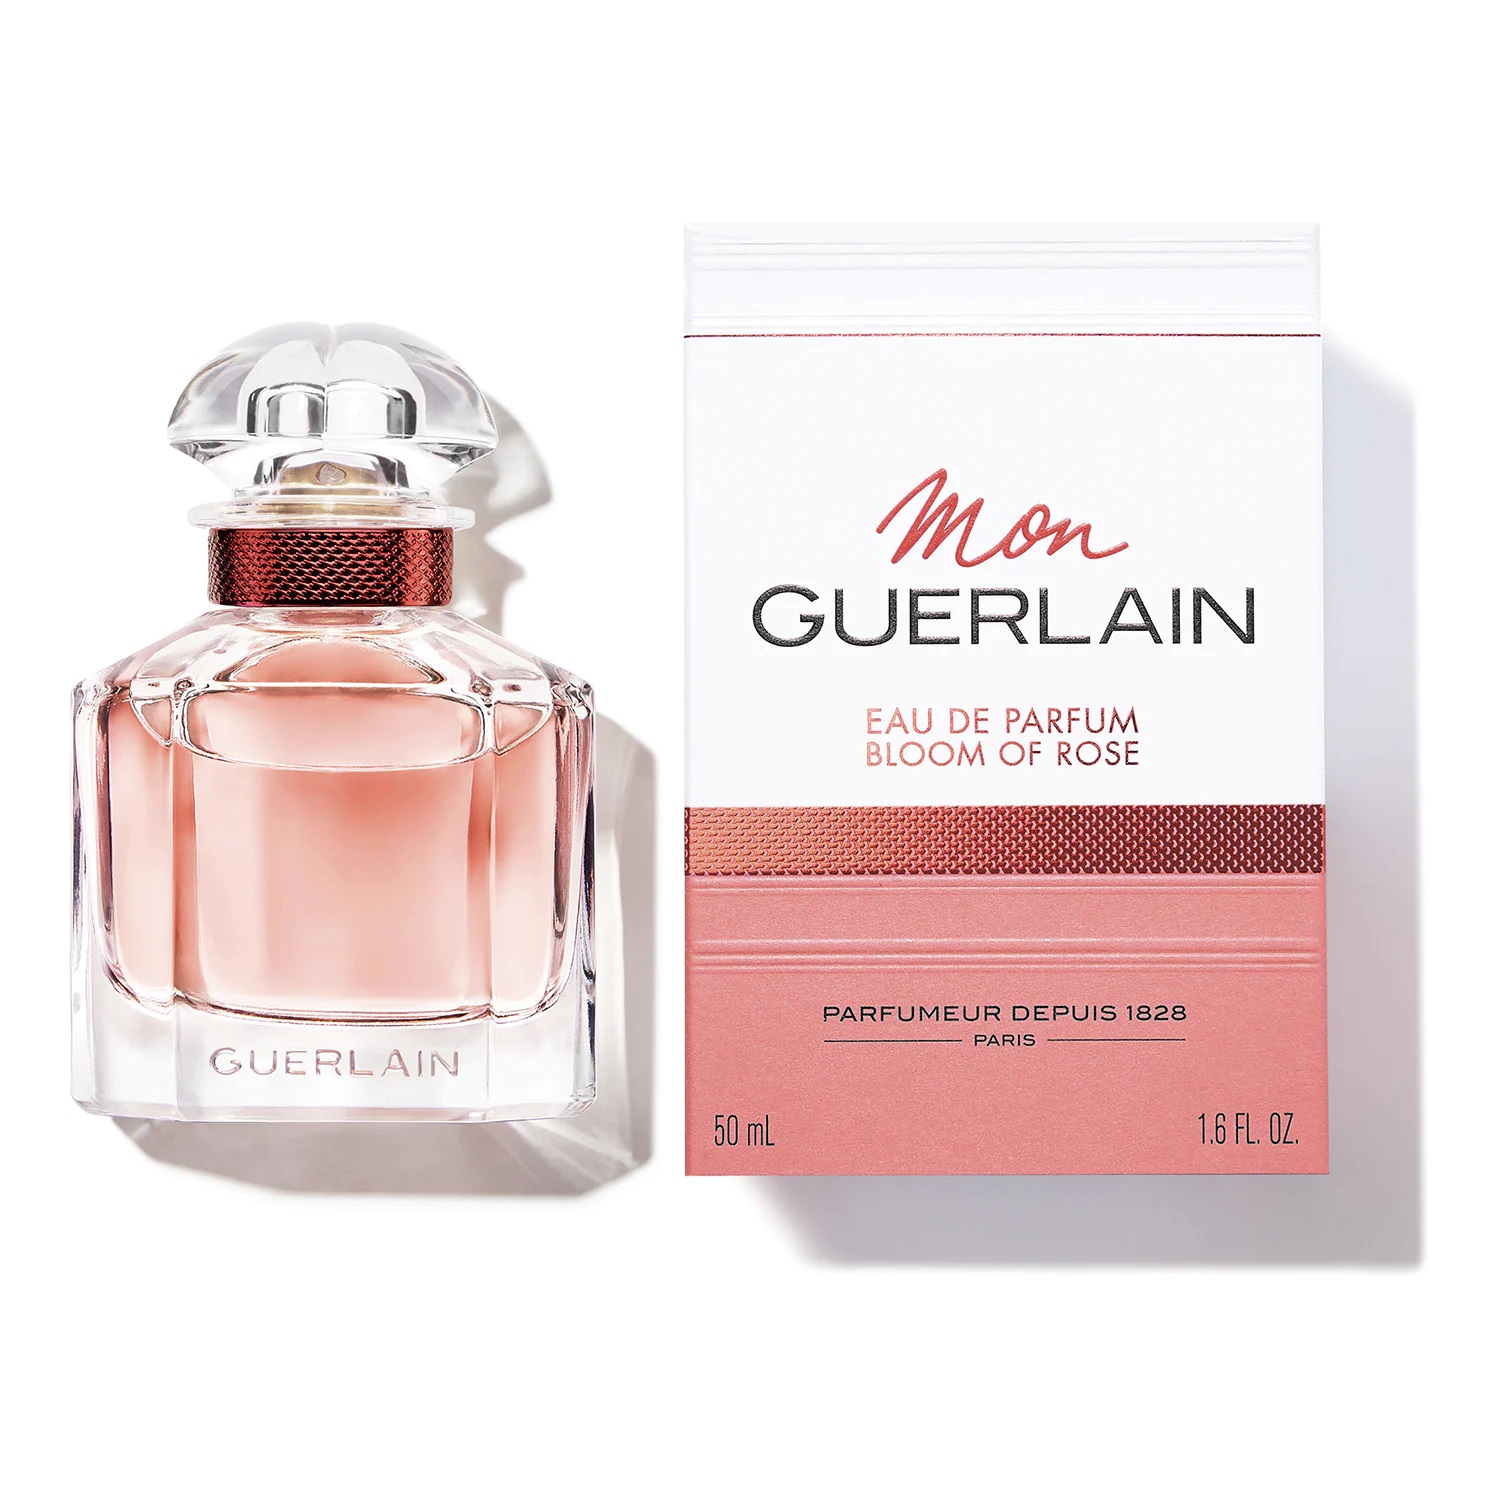 Guerlain Mon Guerlain Bloom of - Scentists eau parfum Rose her de